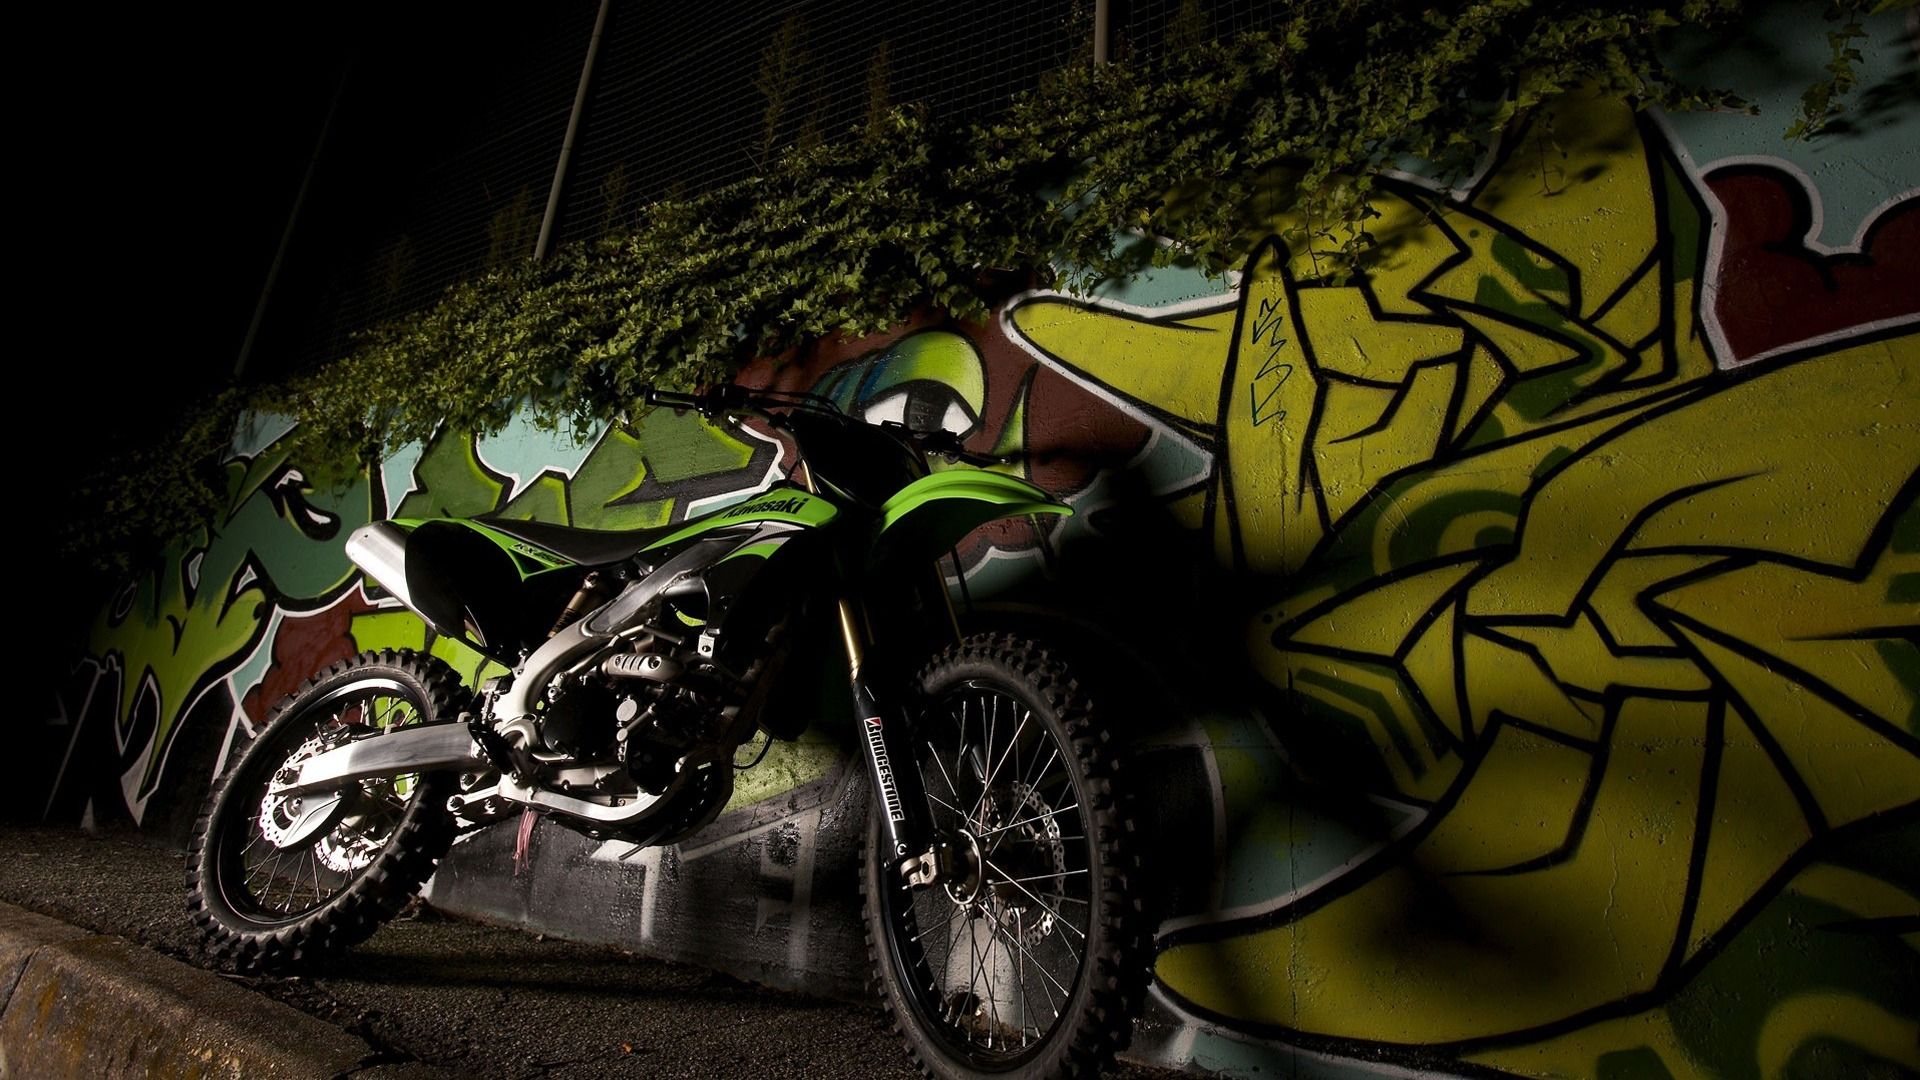 Kawasaki Dirt Bike Wallpapers